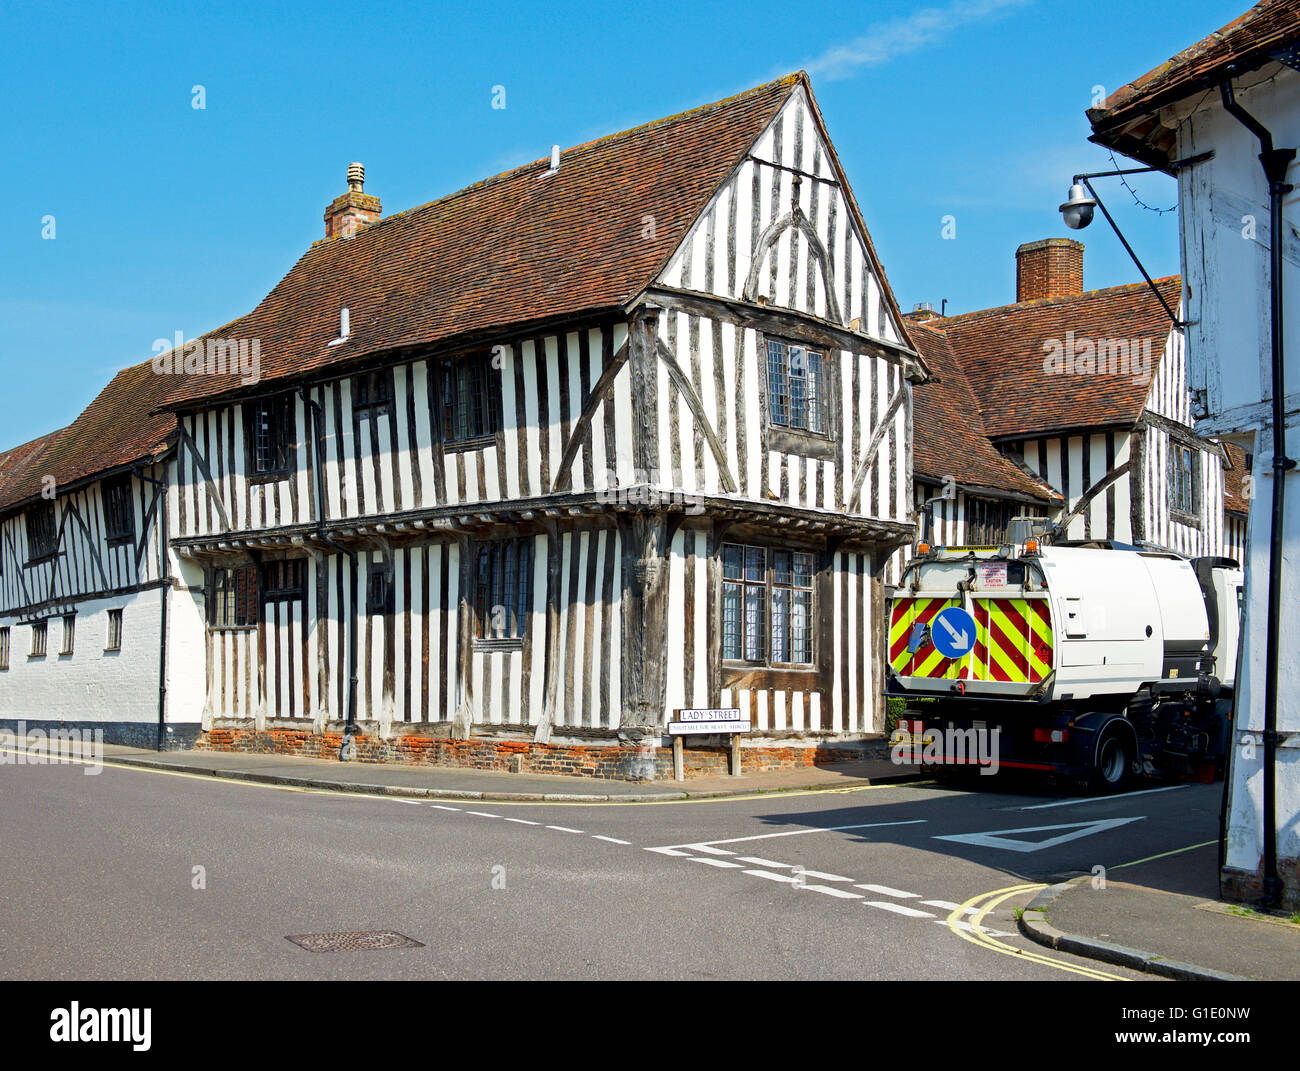 Balayer la rue véhicule dans le village de Long Melford, Suffolk, Angleterre, Royaume-Uni Banque D'Images